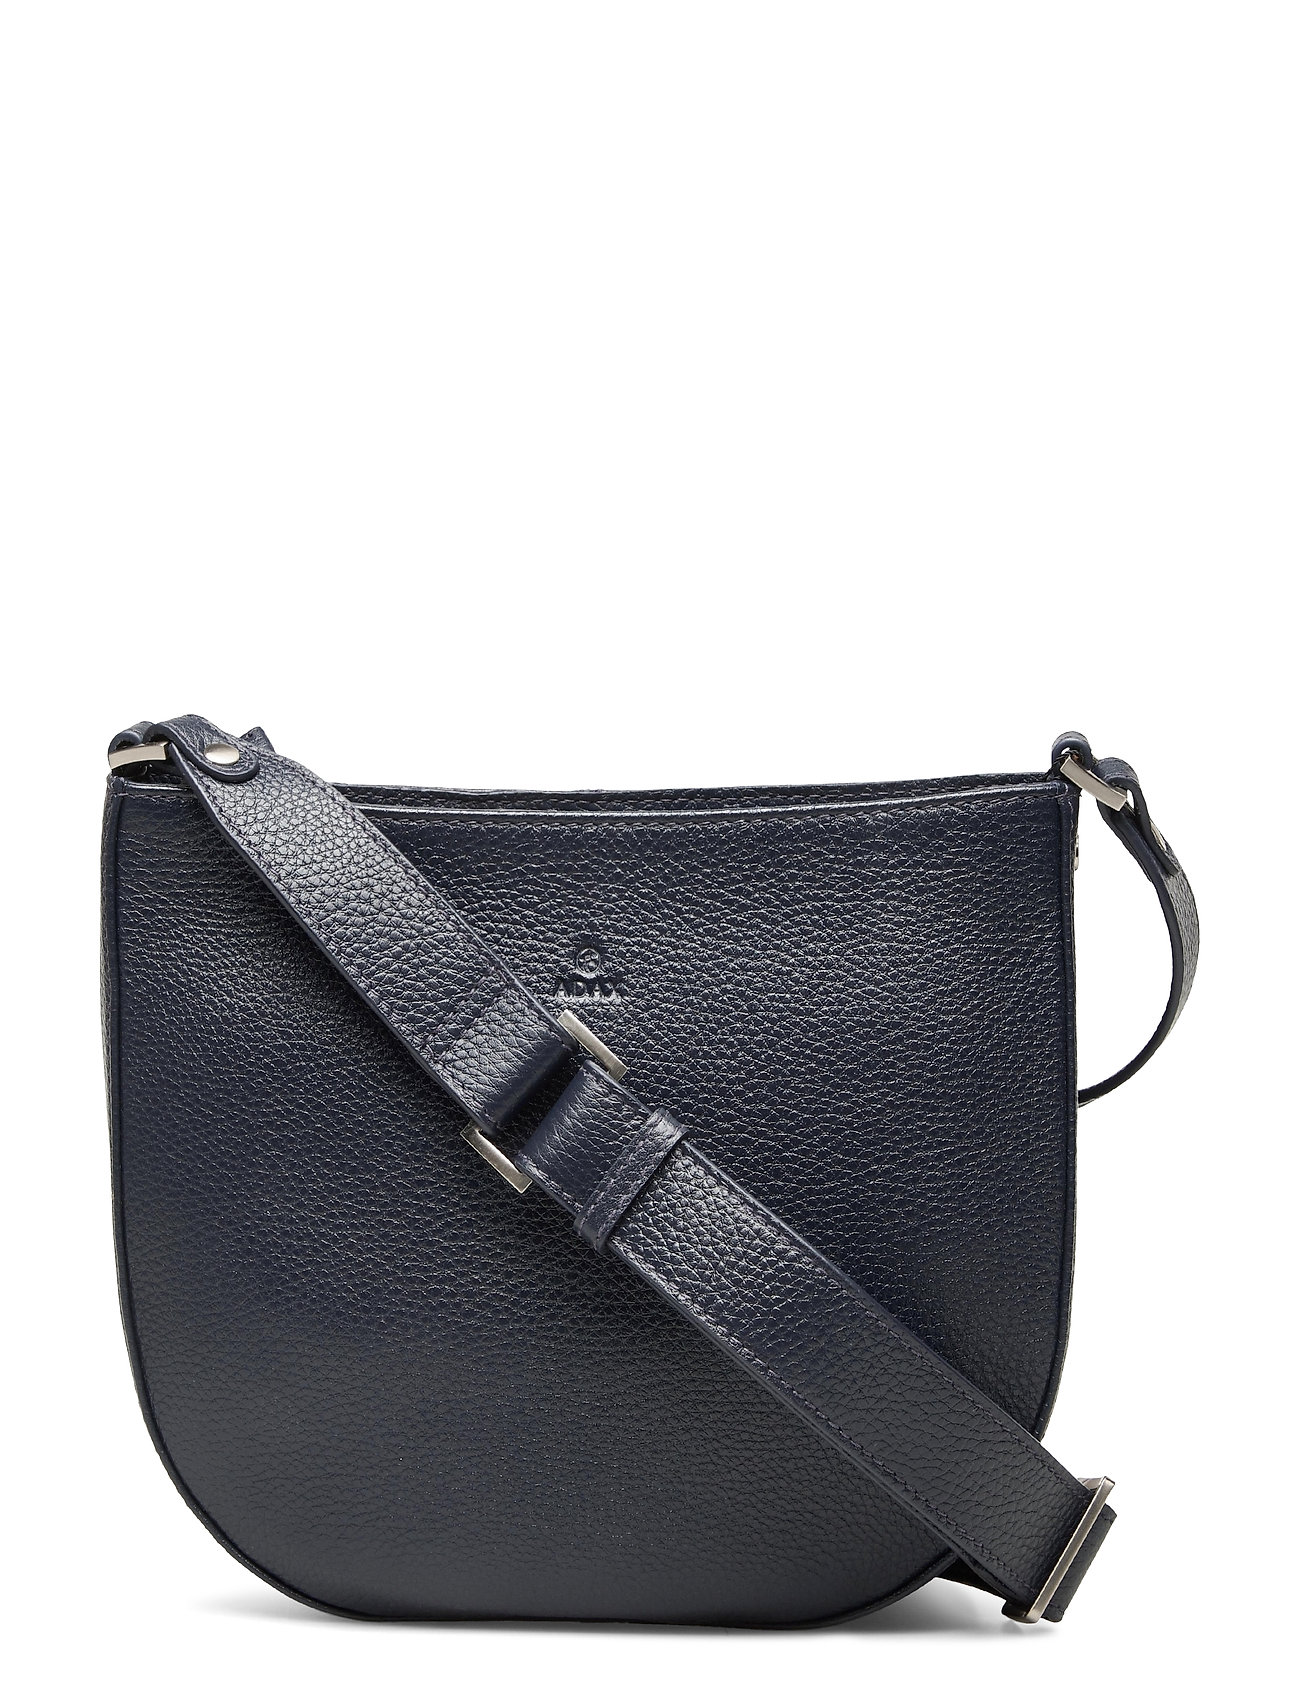 Hvid Adax Cormorano Shoulder Bag Grit Bags Small Shoulder Bags - Crossbody Bags Adax skuldertasker dame Pashion.dk